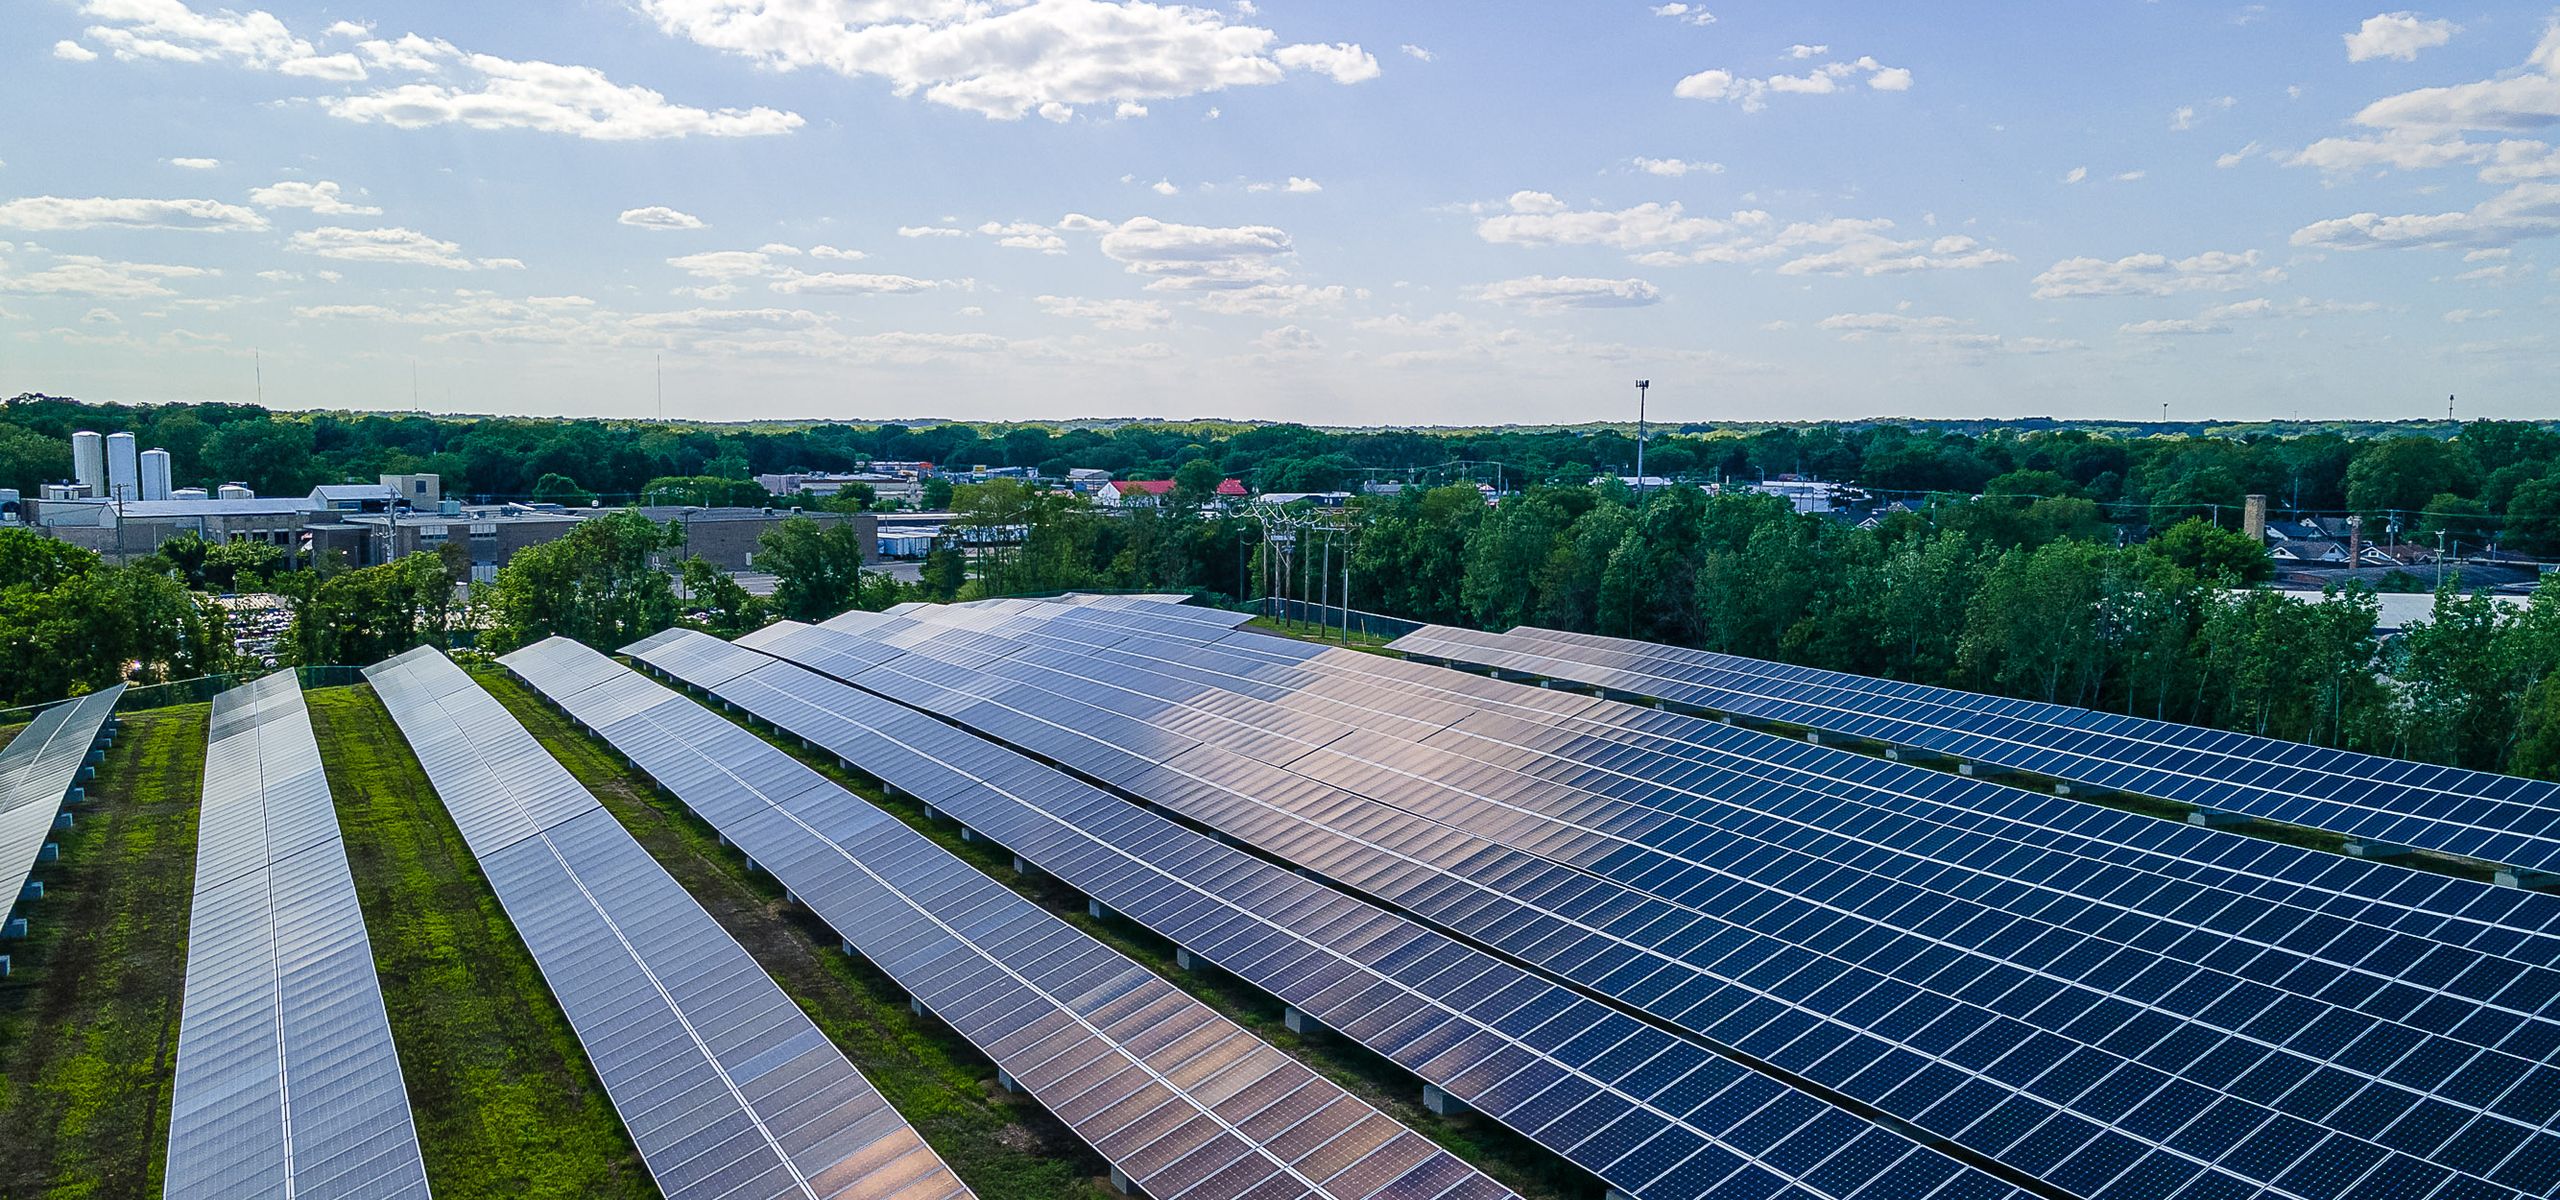 Solar farm in Rockford, Illinois